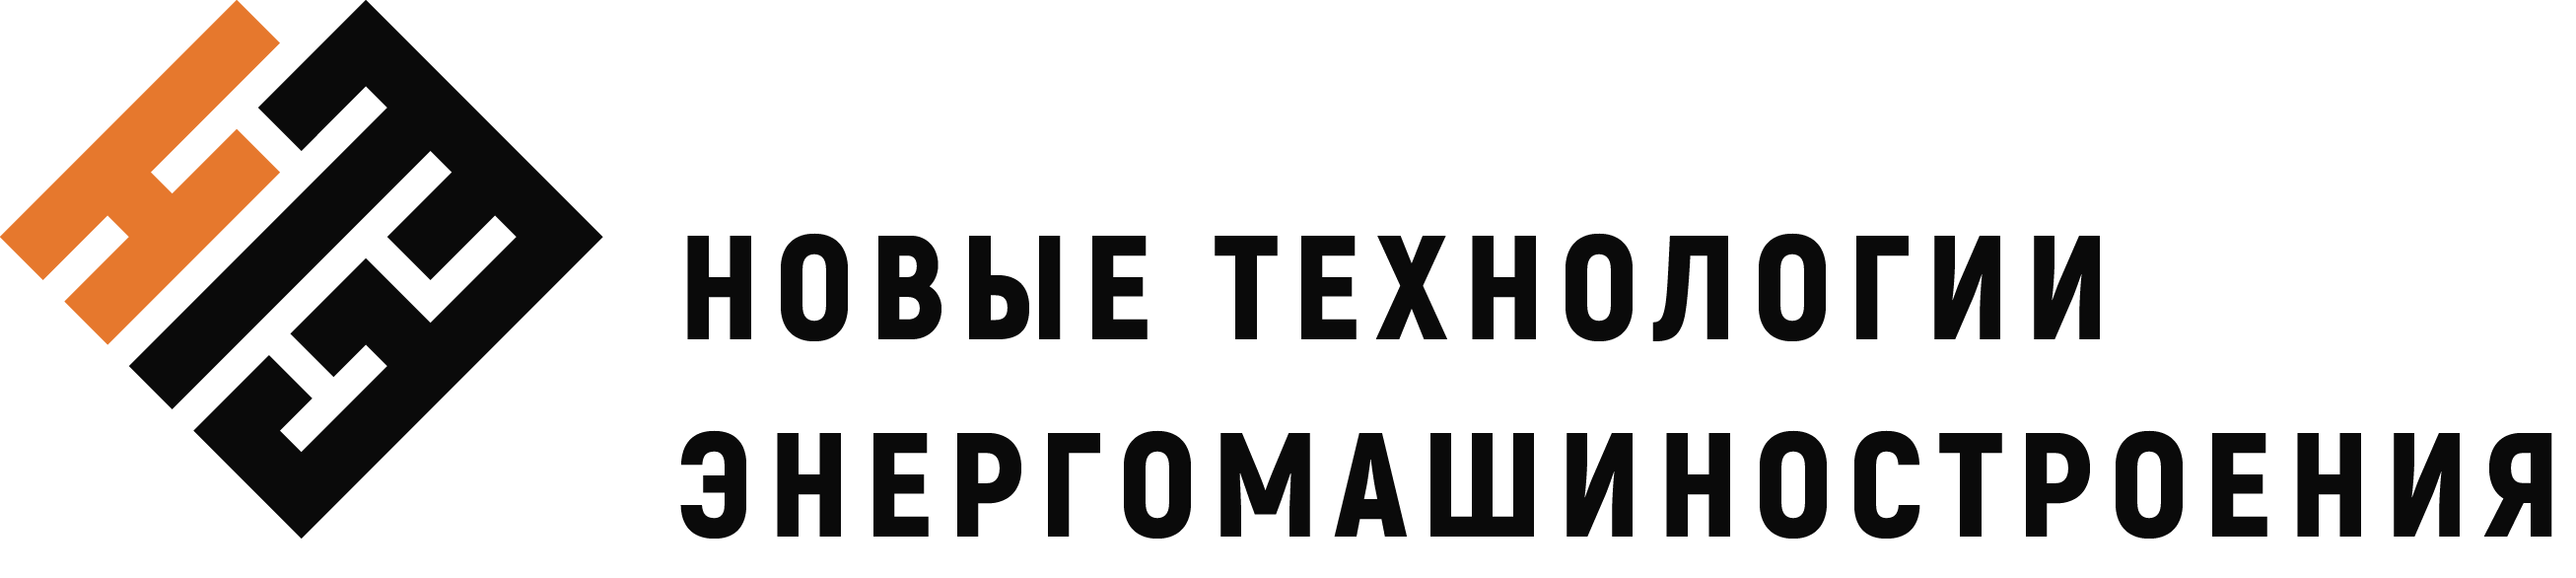 Логотип компании Новые технологии энергомашиностроения